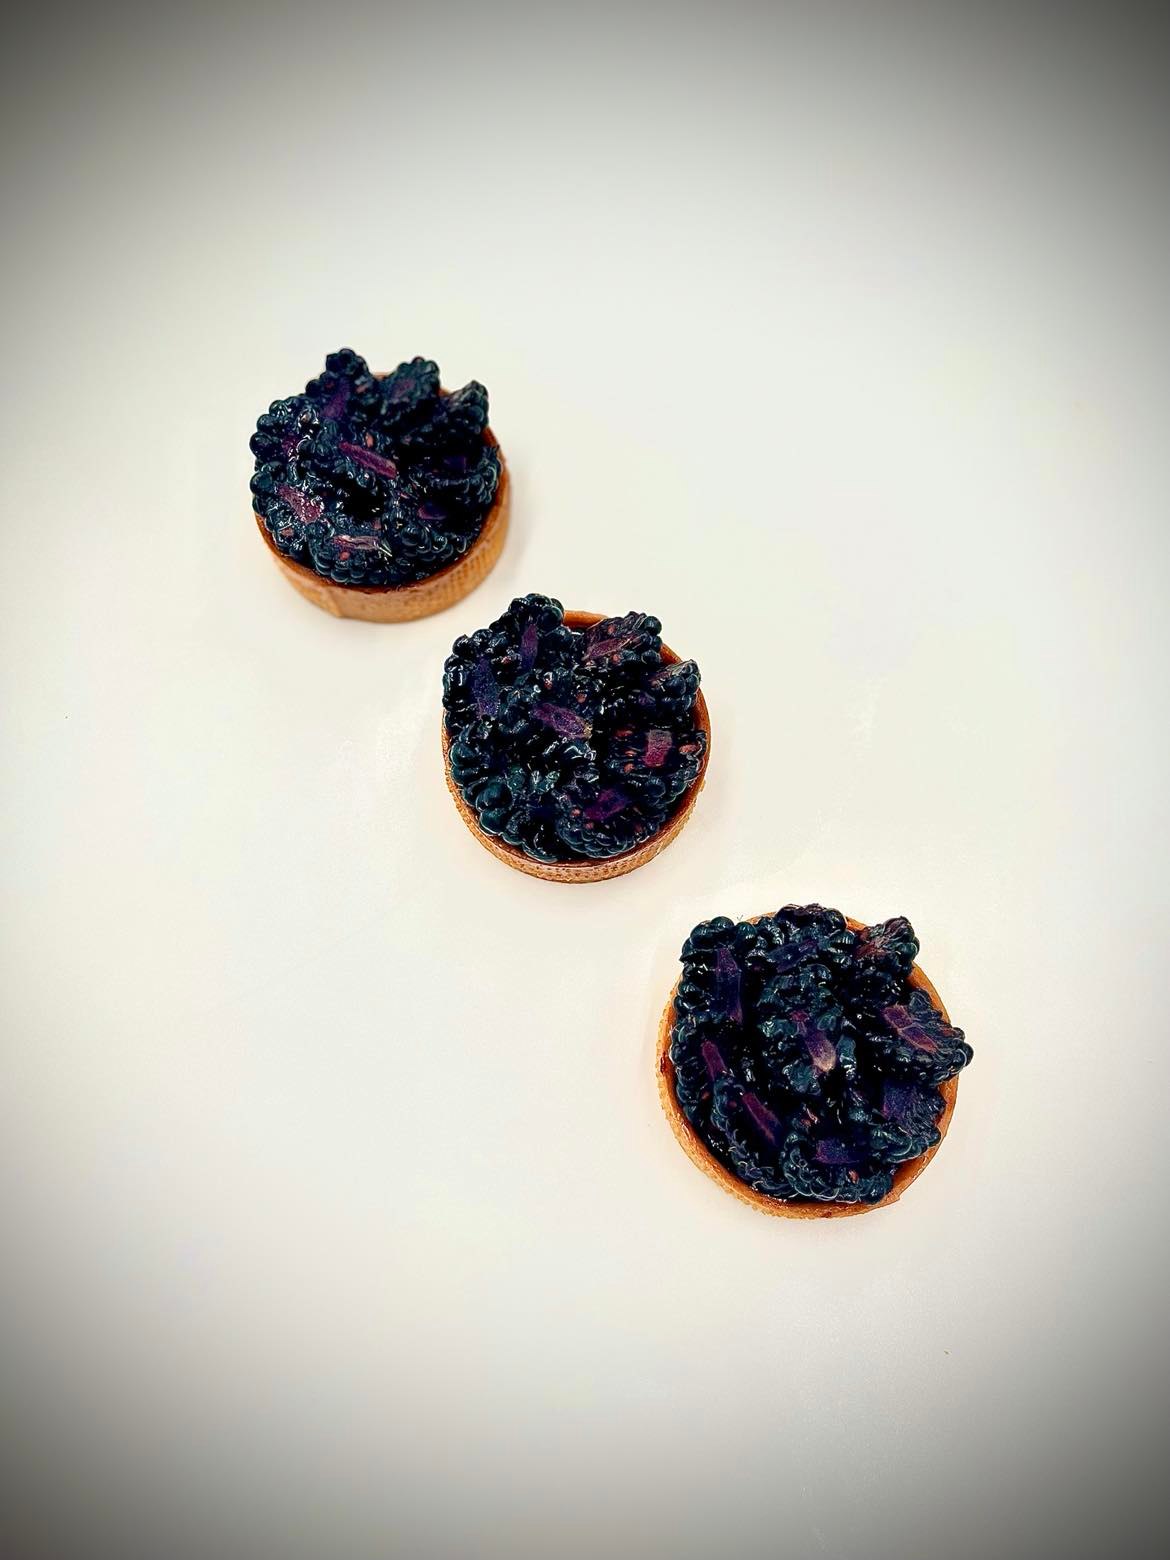 Blackberries tart